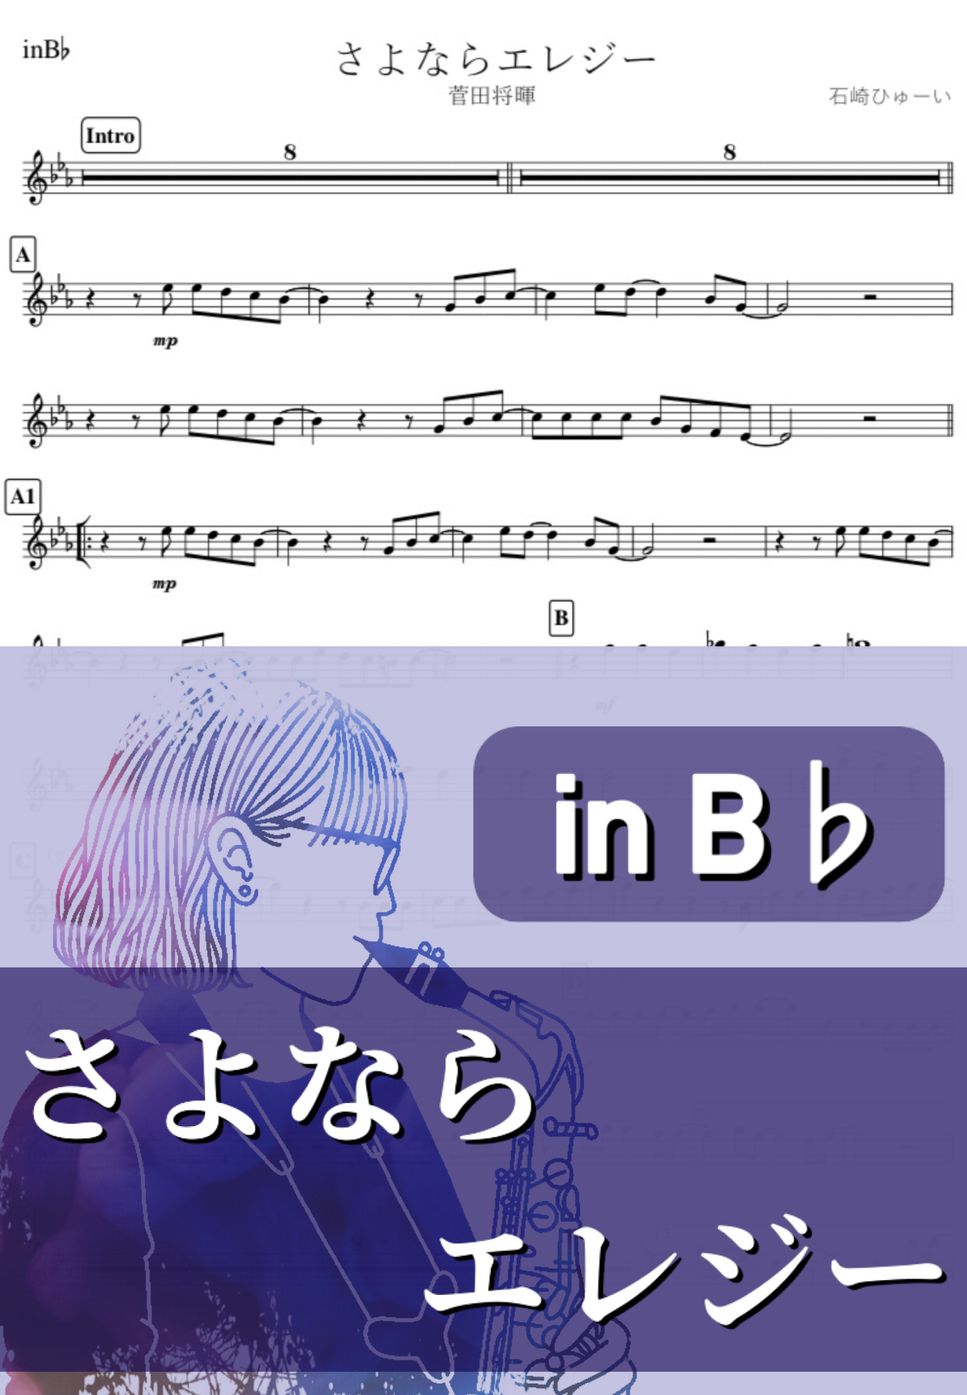 菅田将暉 - さよならエレジー (B♭) by kanamusic